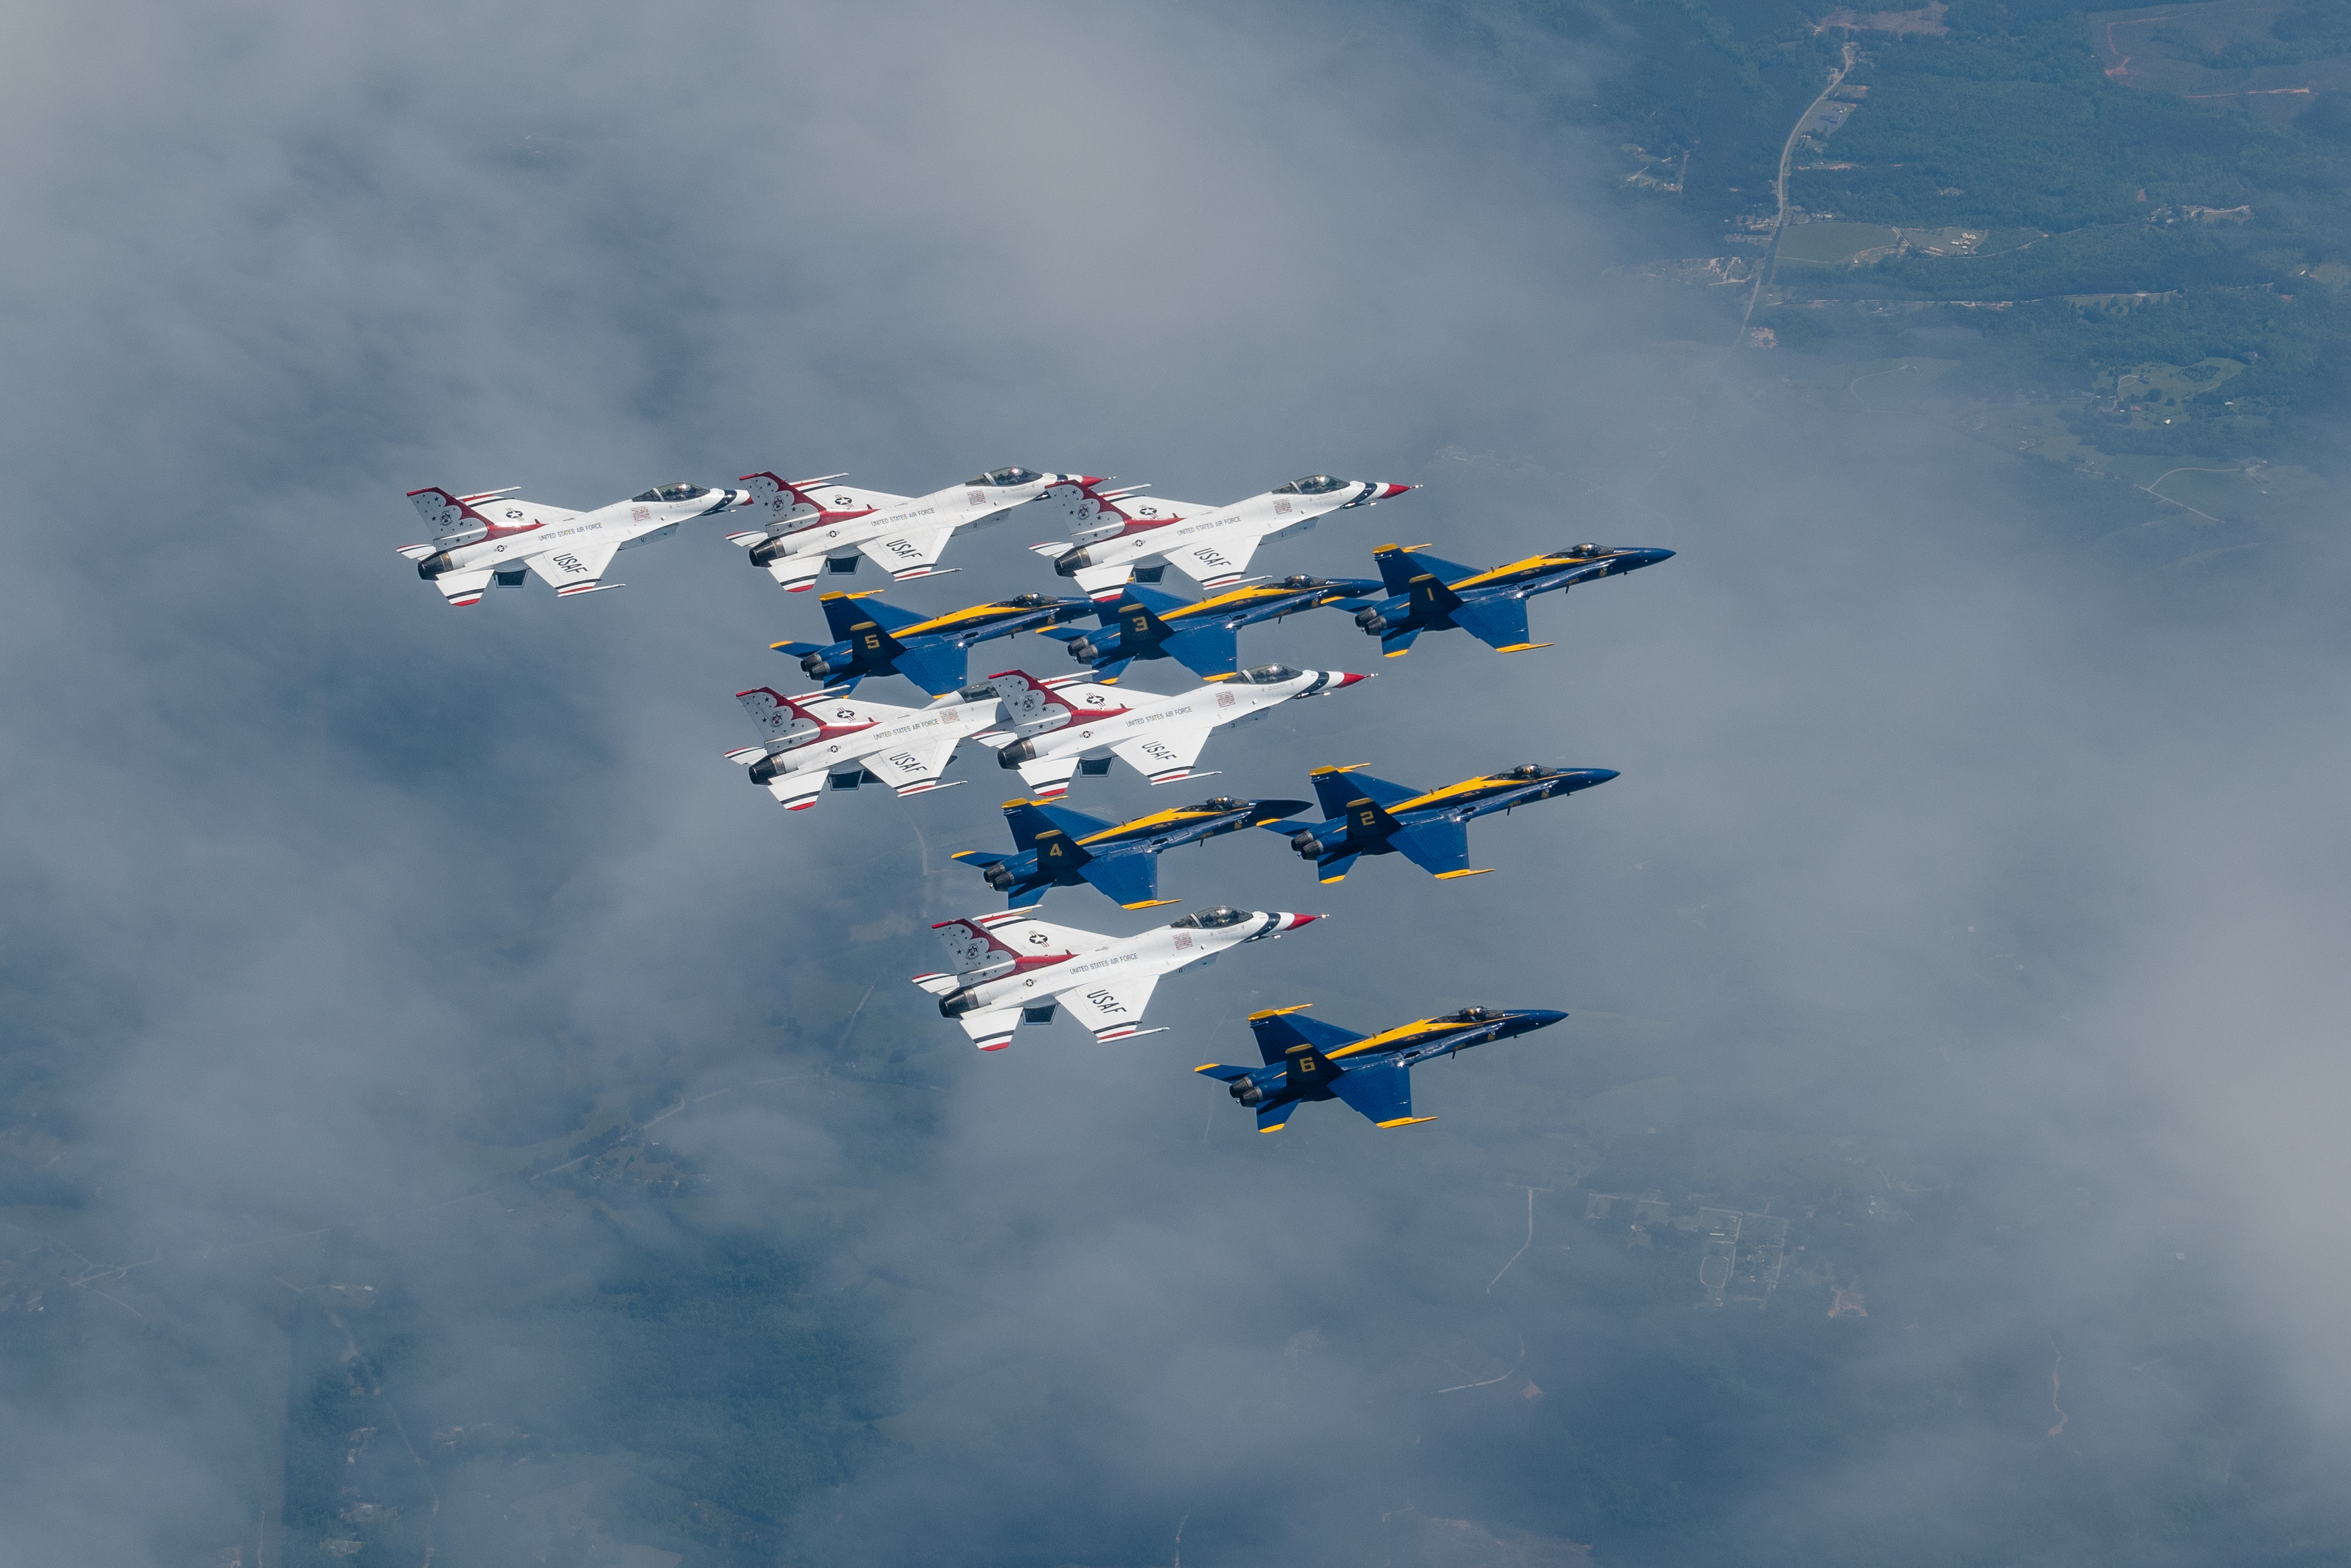 Начало уникальной программы совместных выступлений демонстрационно-пилотажных групп Blue Angels (ВМС США, синие) и Thunderbirds (ВВС США, белые) в честь борцов со вспышкой короновируса COVID-19, маршрутный пролет  над New York City, New Jersey и Philadelphia, 28 апреля 2020 года